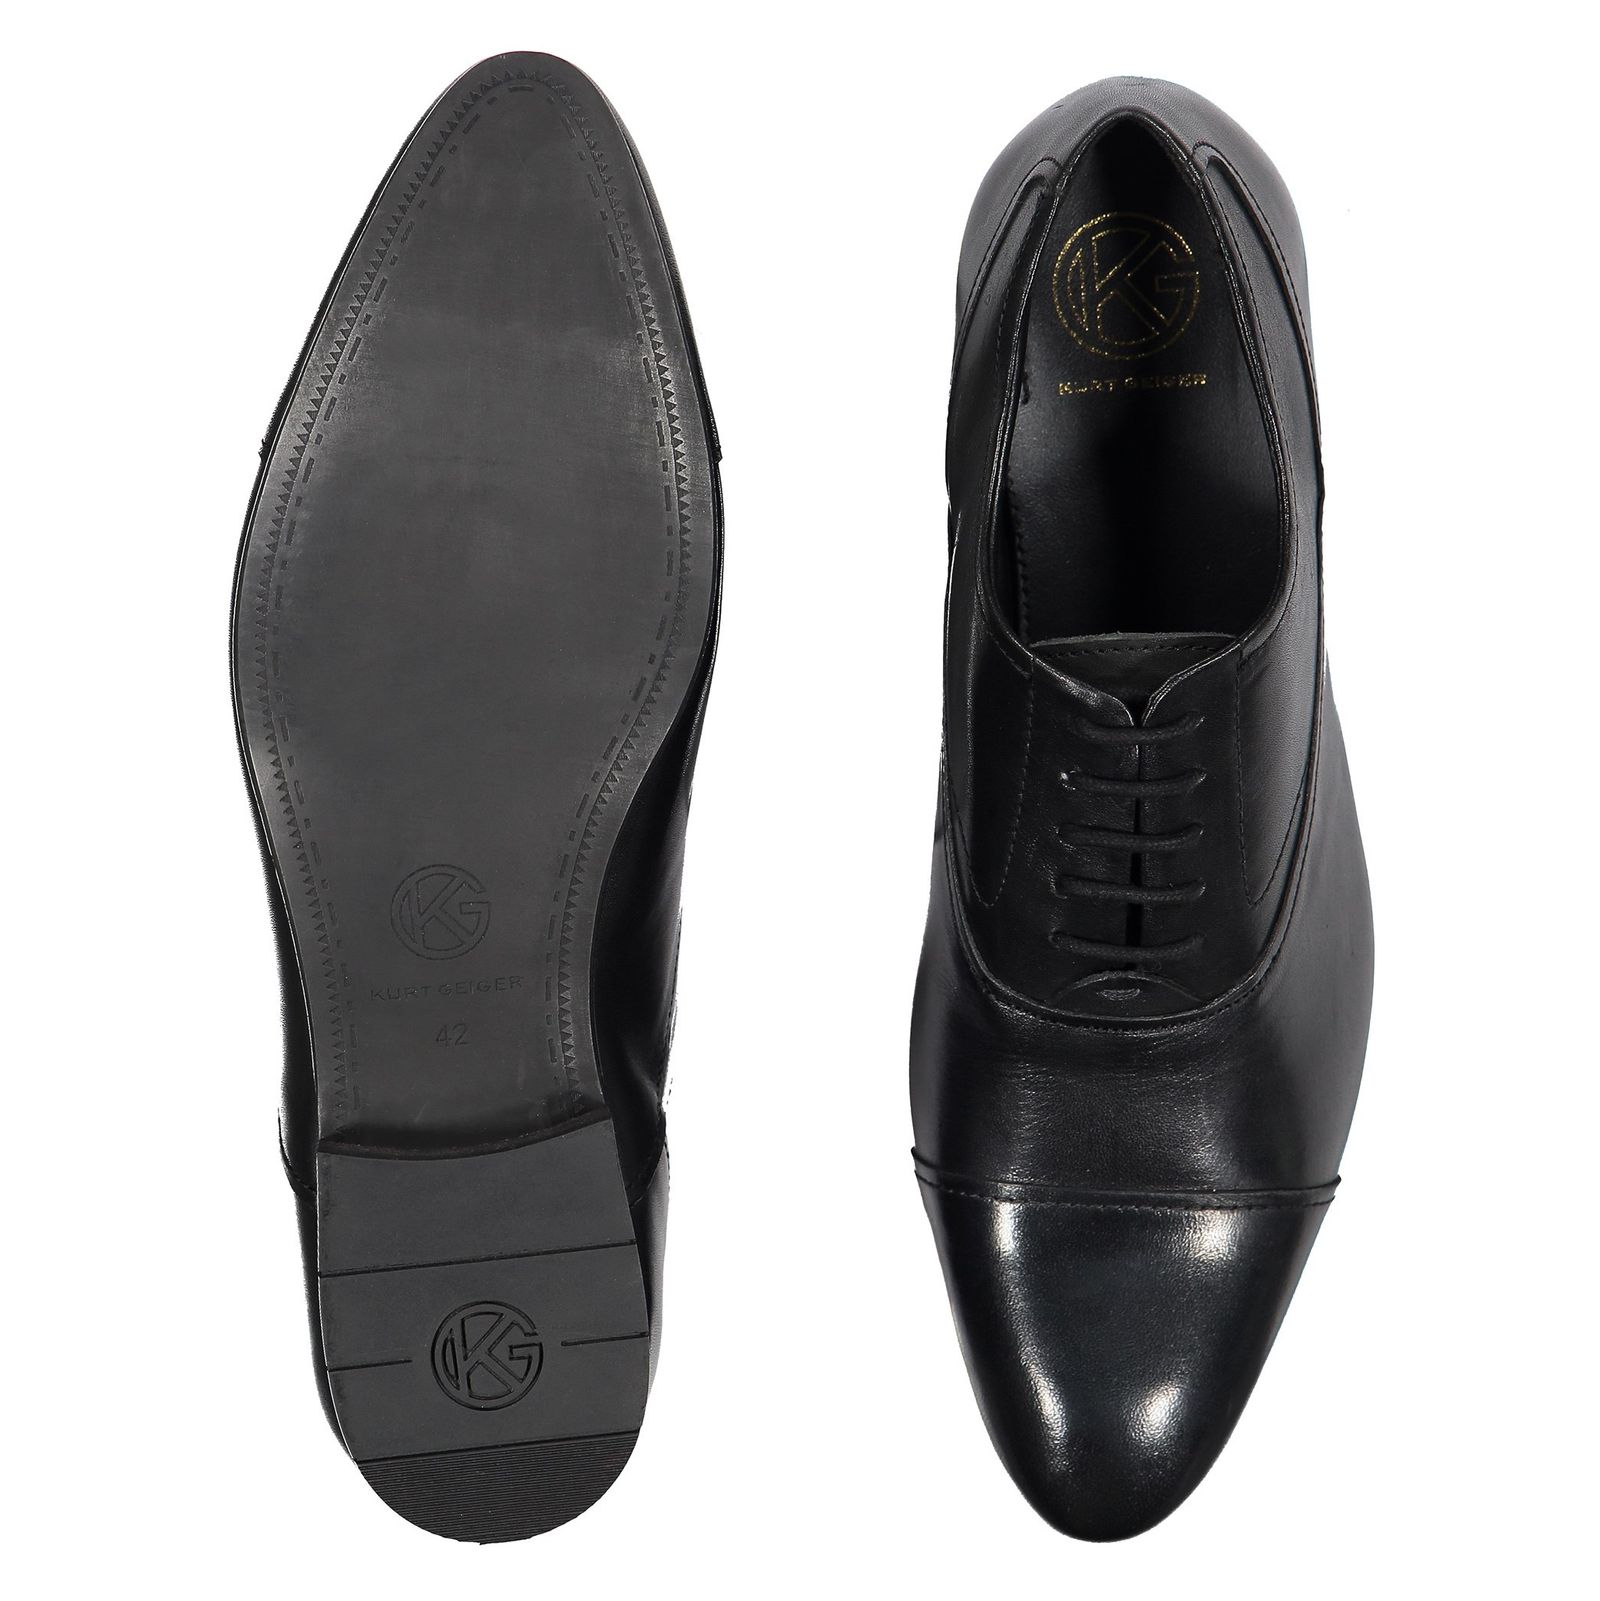 کفش رسمی چرم مردانه - کرت گایگر - مشکي - 3